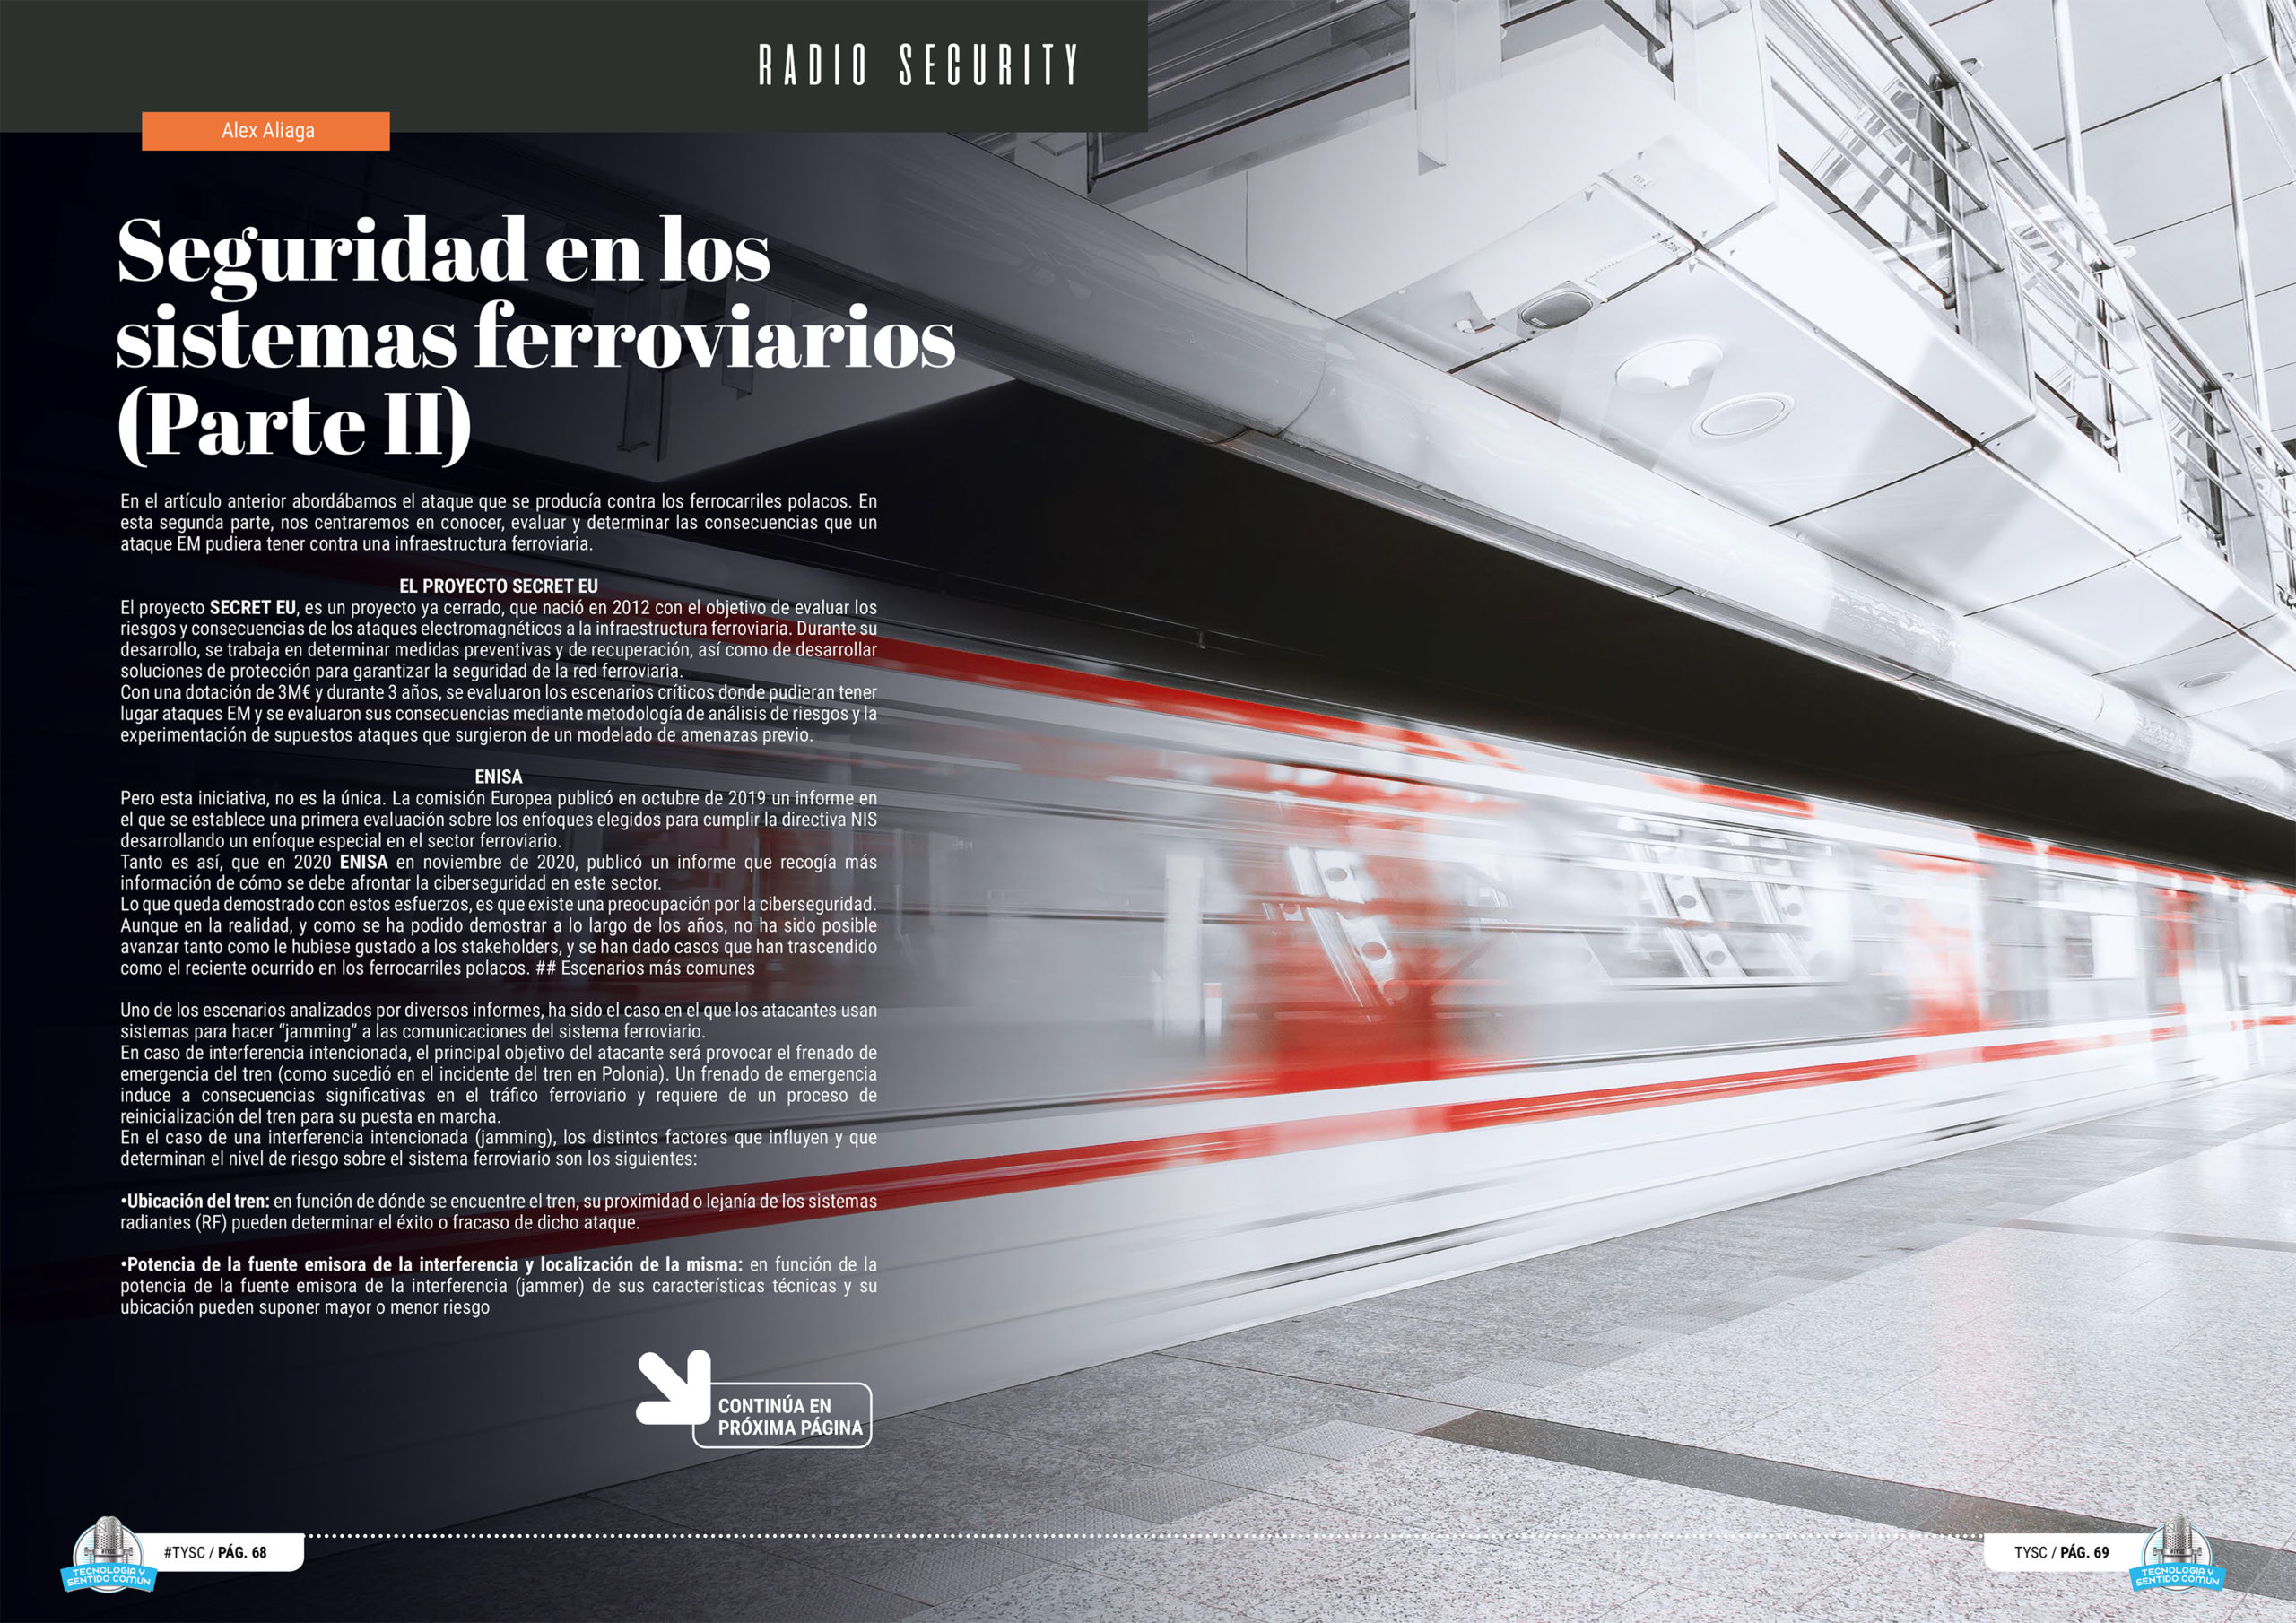 "Seguridad en los sistemas ferroviarios (Parte II)" artículo de Alejandro Aliaga Casanova en la seccion "Radio Security" de la edición de noviembre de la Revista Mensual Tecnología y Sentido Común TYSC